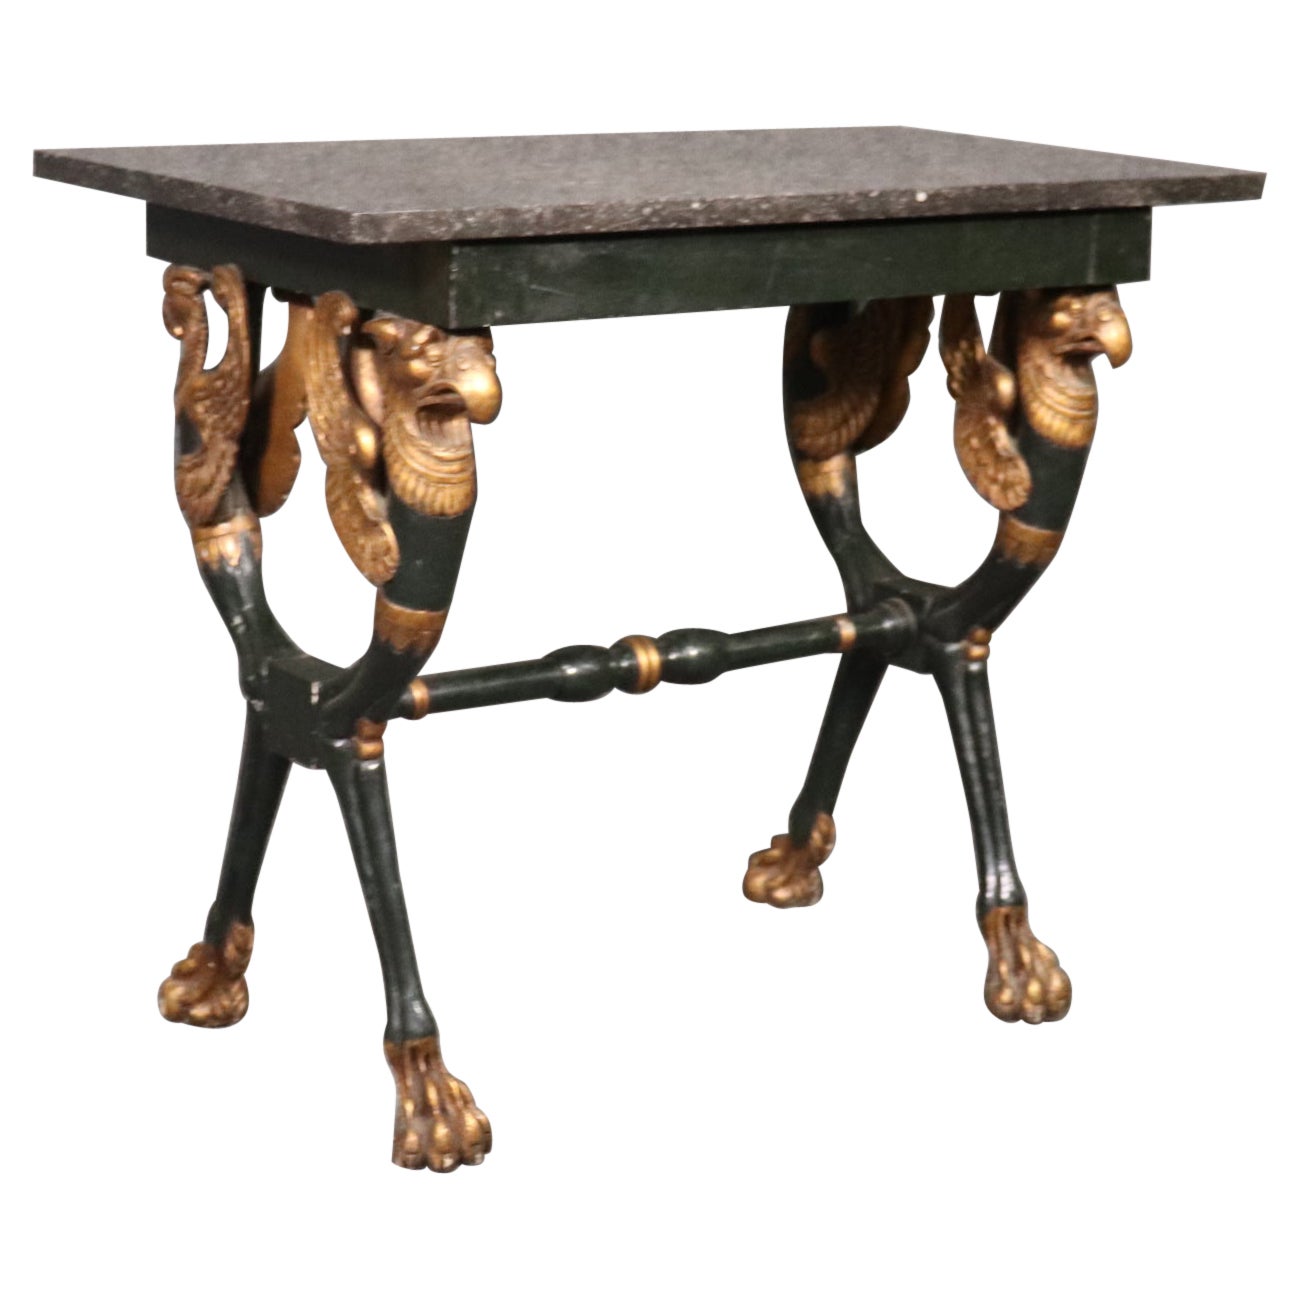 Table console de style Directoire Maison Jansen avec aigles